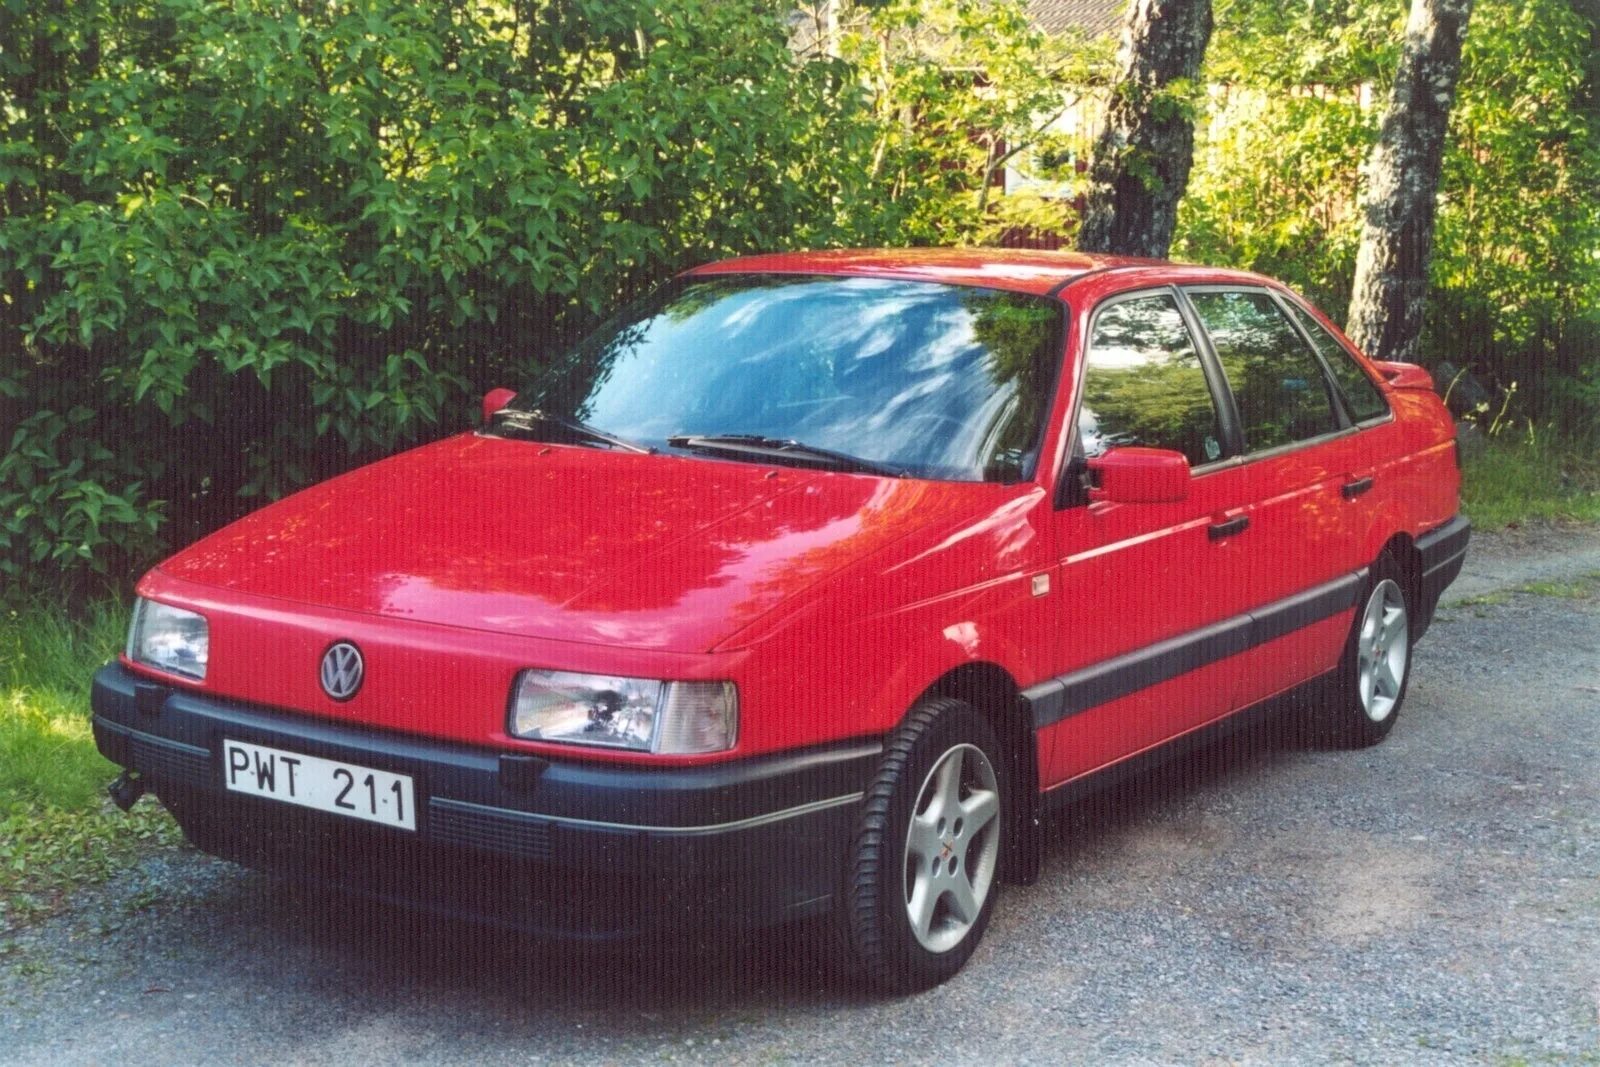 Volkswagen Passat b3 седан красный. Фольксваген Пассат 1993. Фольксваген Пассат 1993 красный. Фольксваген Пассат б3 1993. Машину фольксваген пассат б3